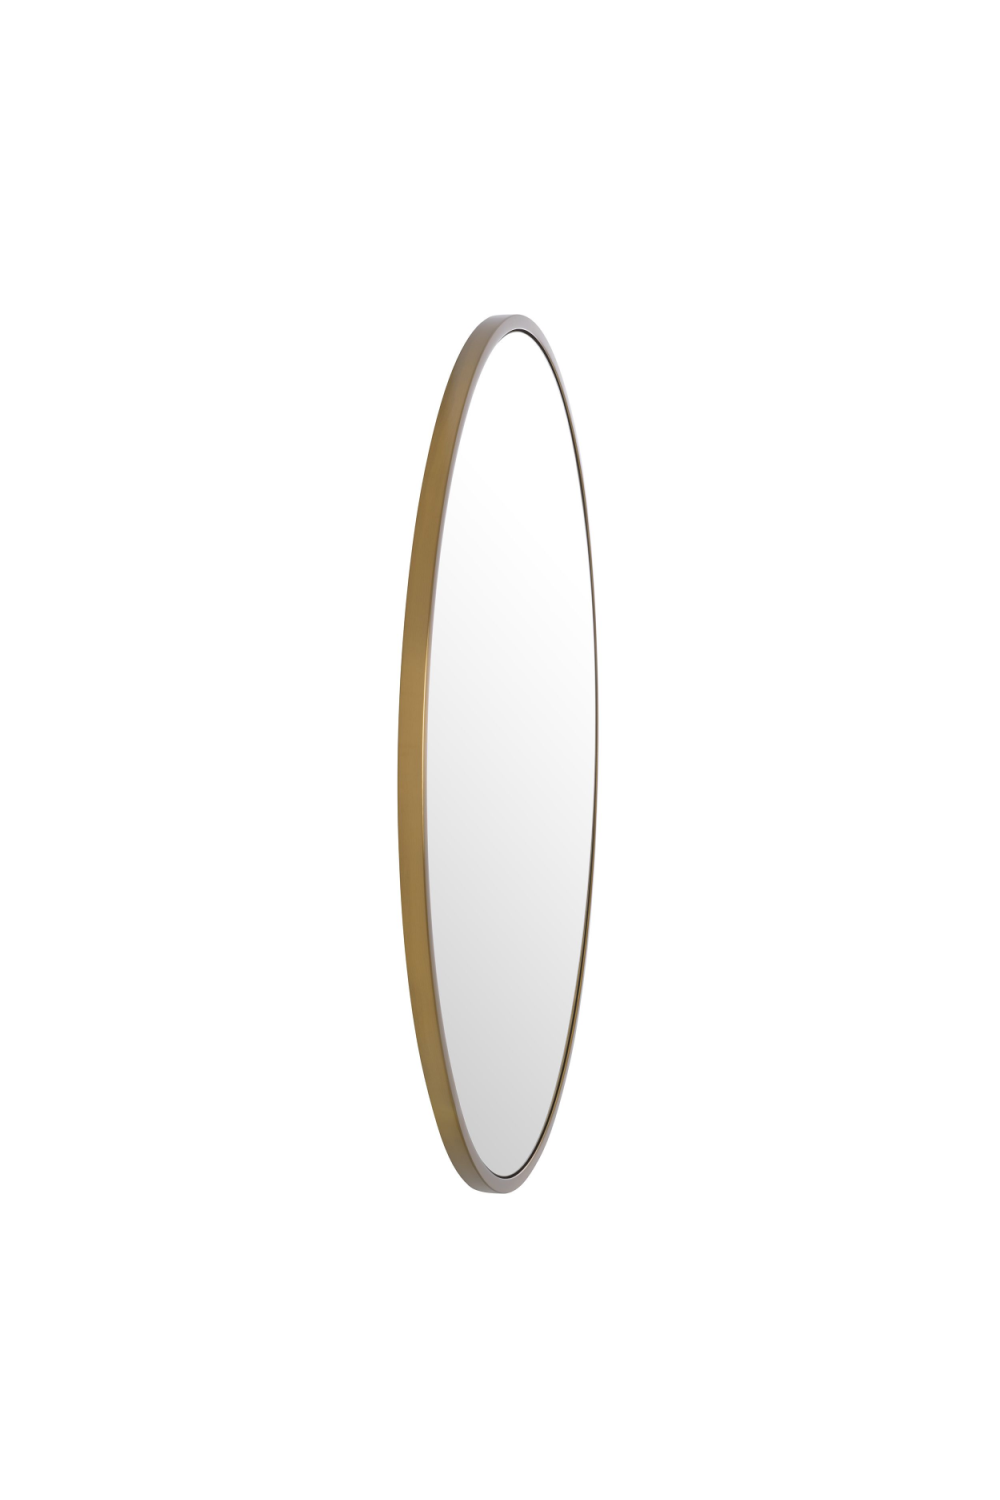 Brass Frame Round Mirror | Eichholtz Heath | OROA